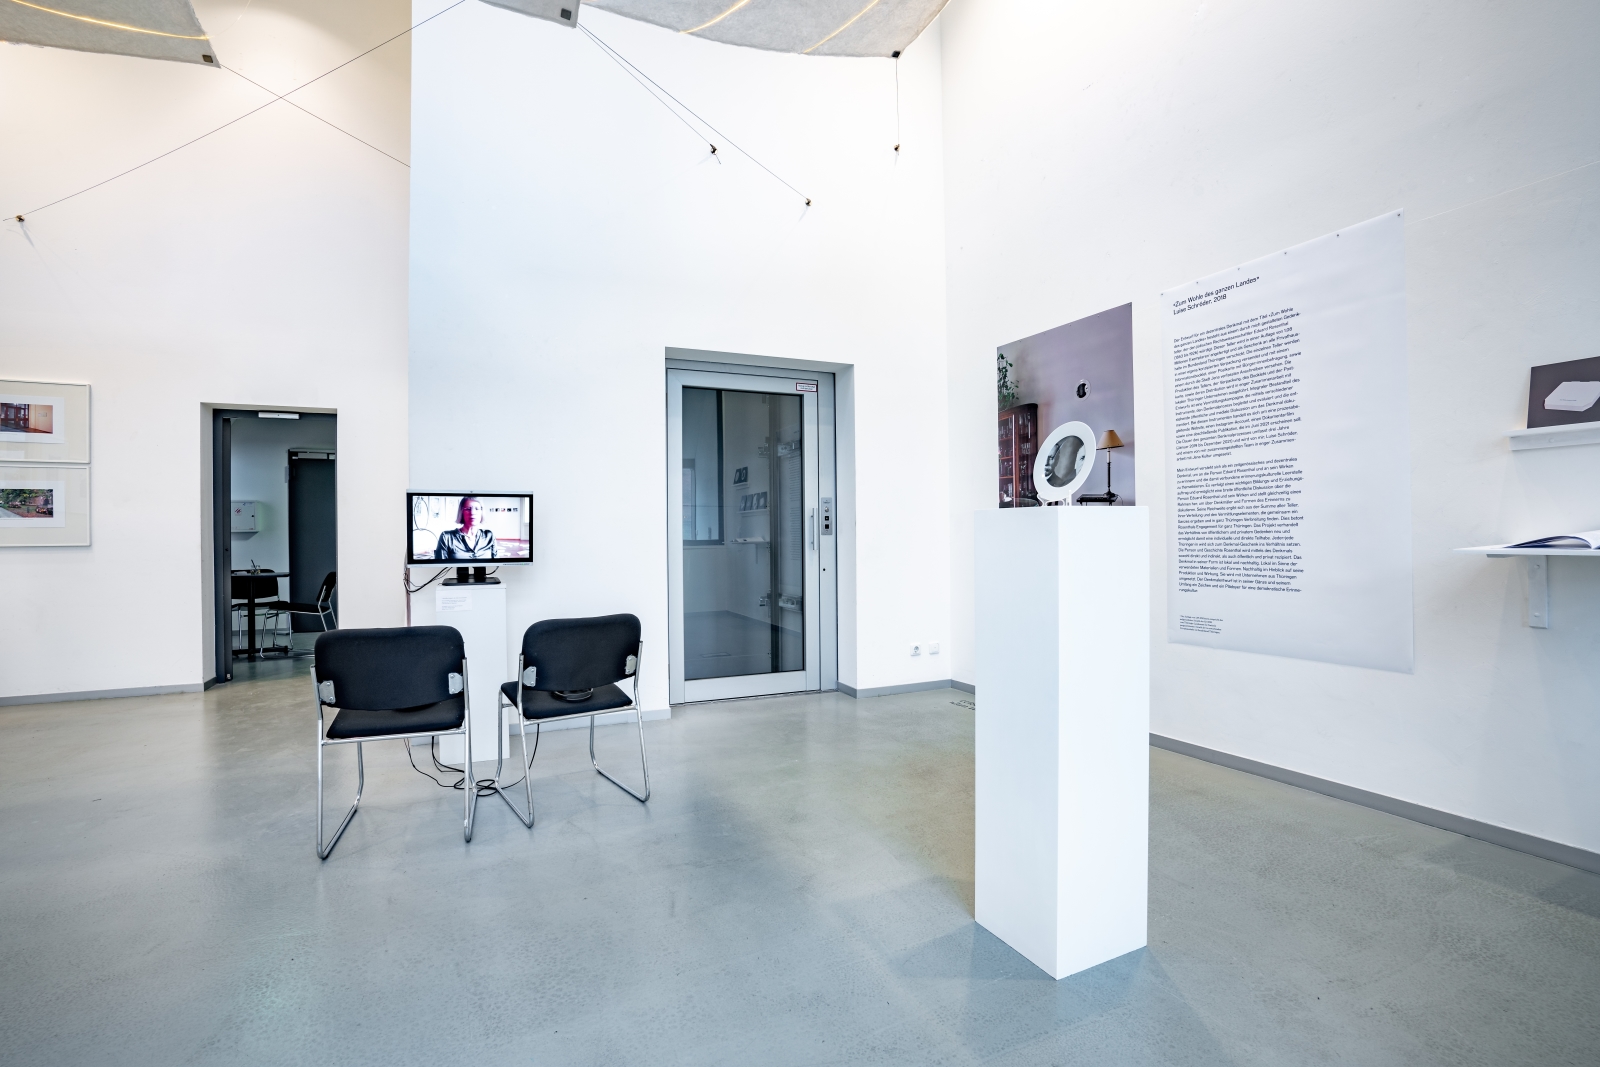 Der obere Ausstellungsraum des Jenaer Kunstverein: In dem hellen Raum ist links der Entwurf zum Denkmal-Teller von Luise Schröder, in der Bildmitte ein Bildschirm mit einem Videointerview und zwei Stühlen zu sehen.